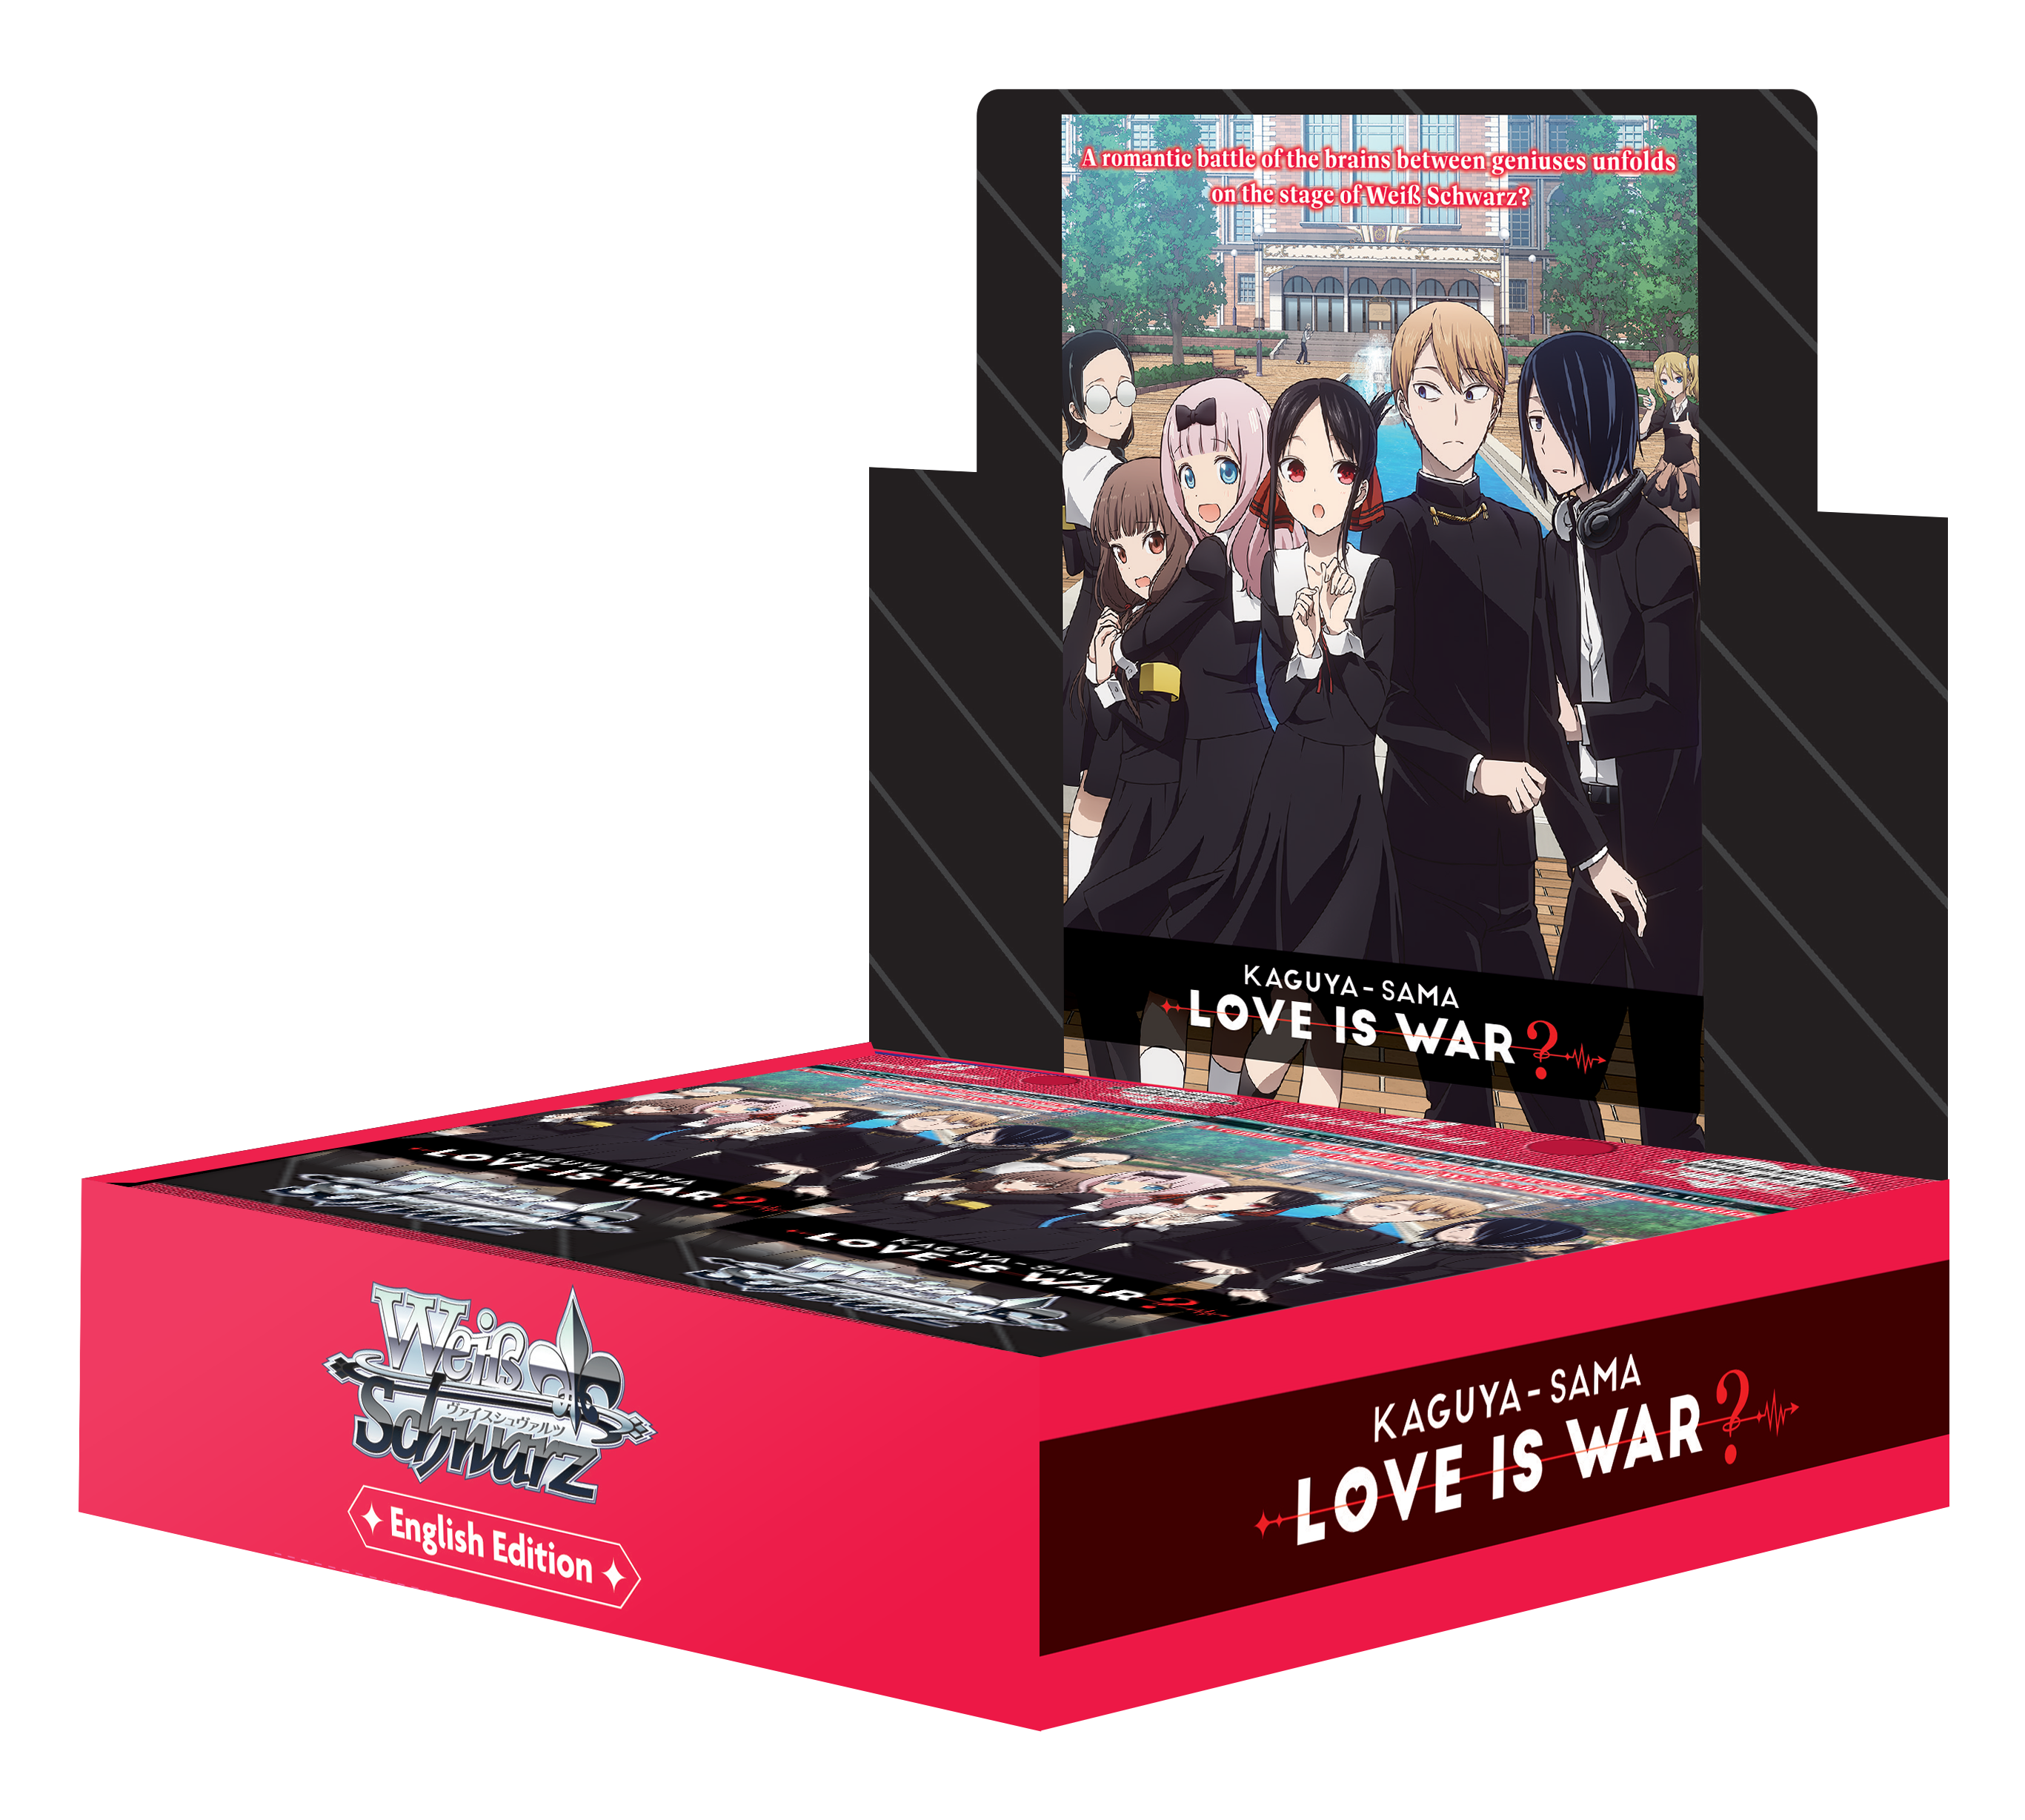 Kaguya-sama Love is War? - Booster Box